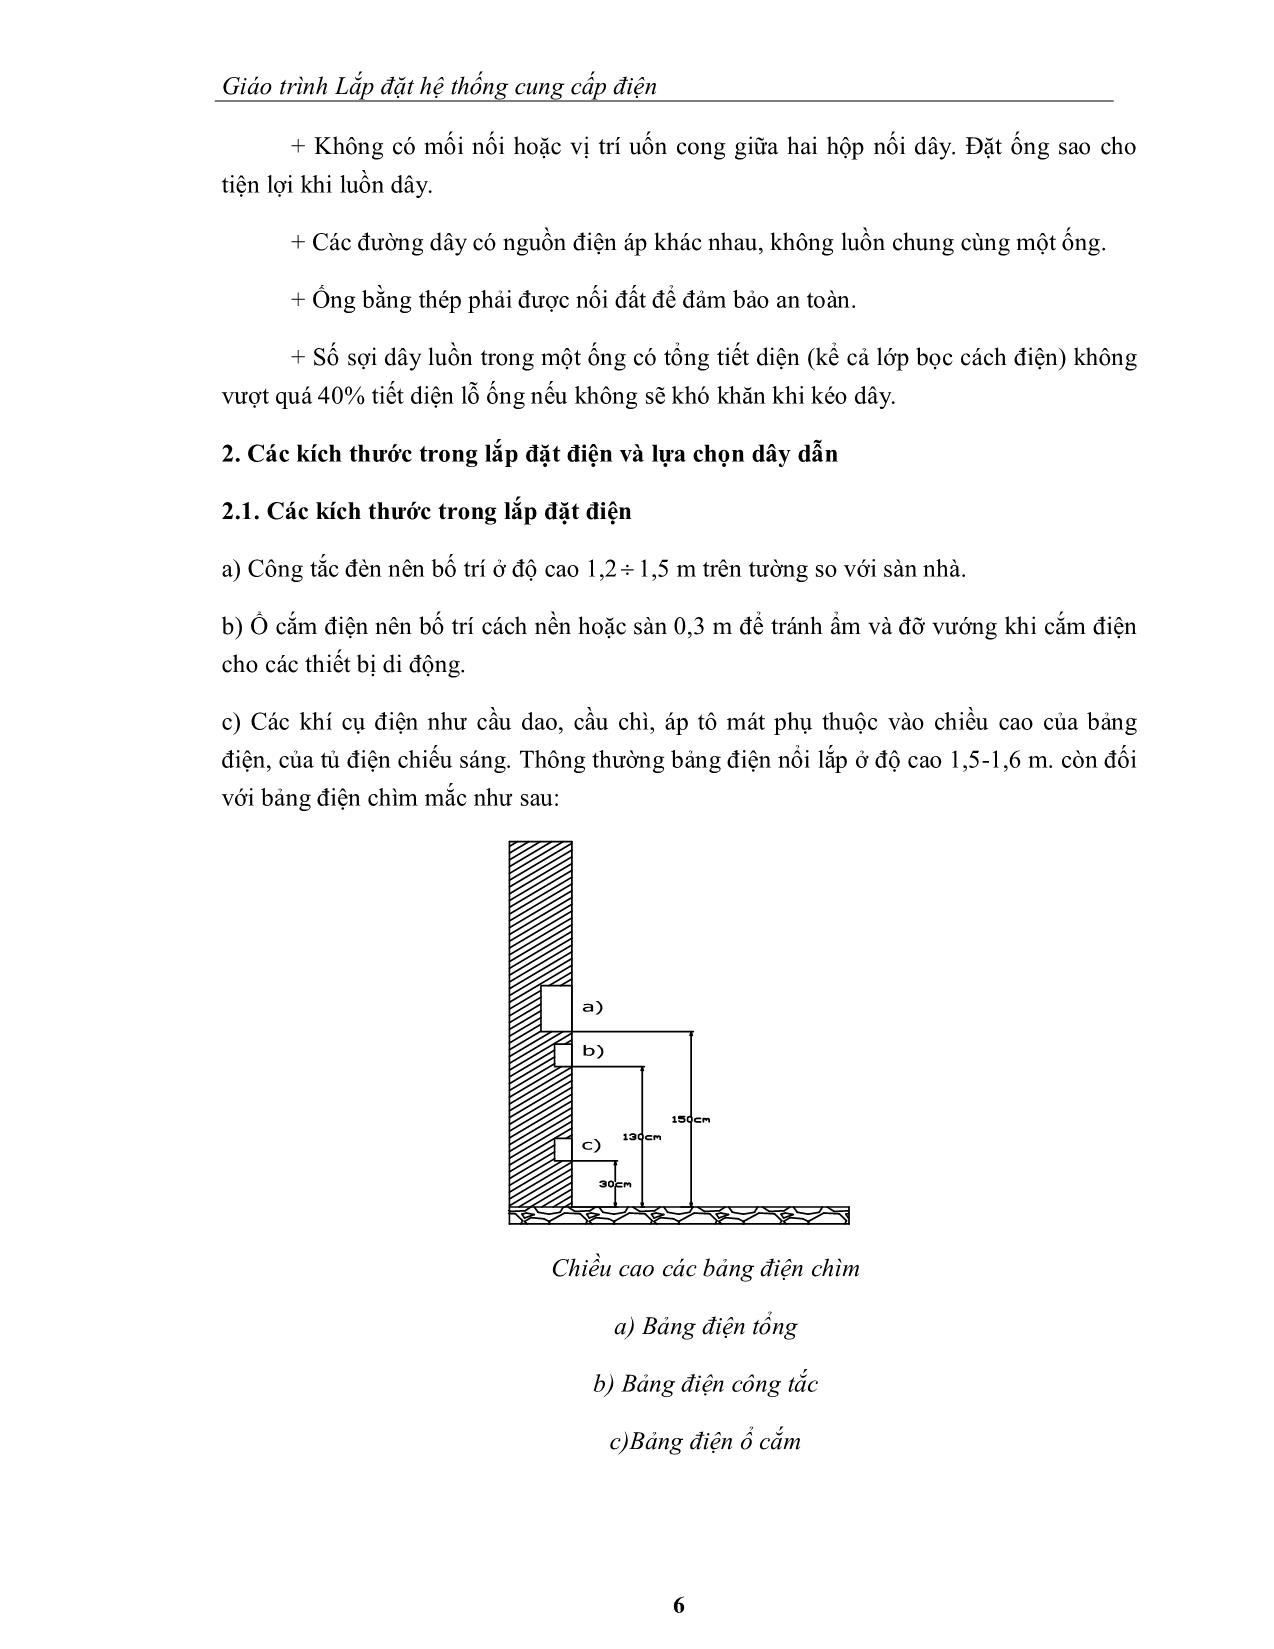 Giáo trình mô đun Lắp đặt hệ thống cung cấp điện trang 9